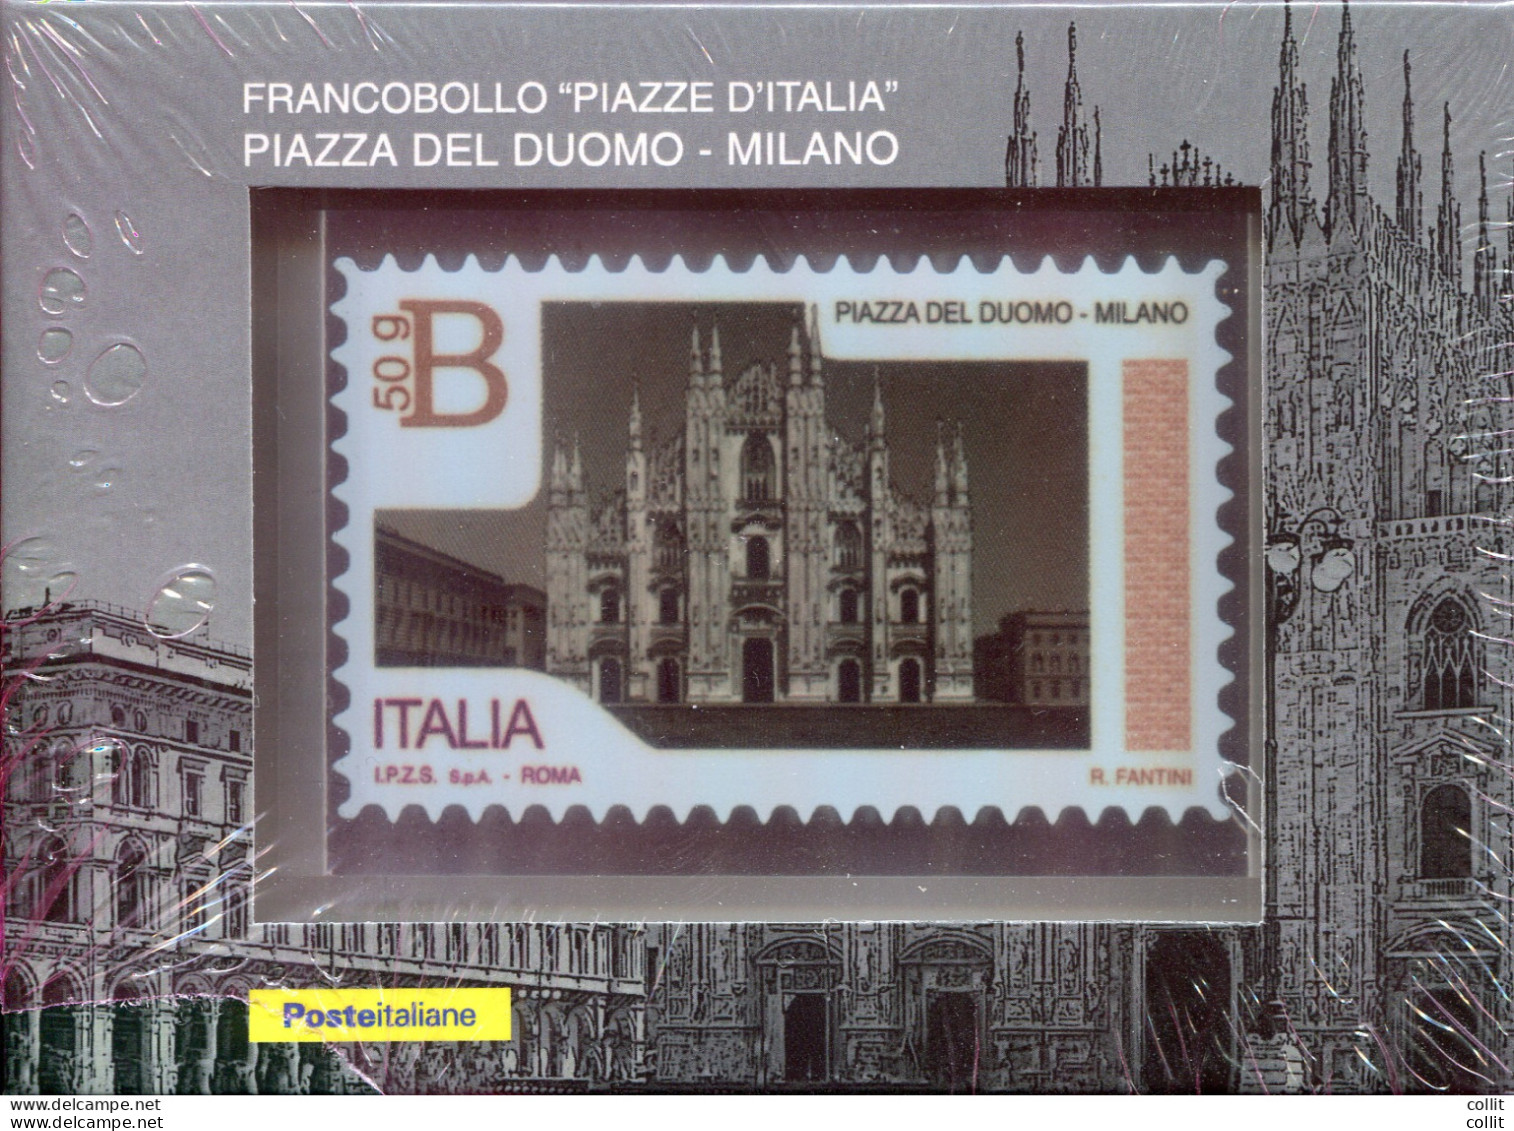 Francobollo Forever Su Lamina Metallica - Piazze D'Italia - Duomo Milano - Errors And Curiosities